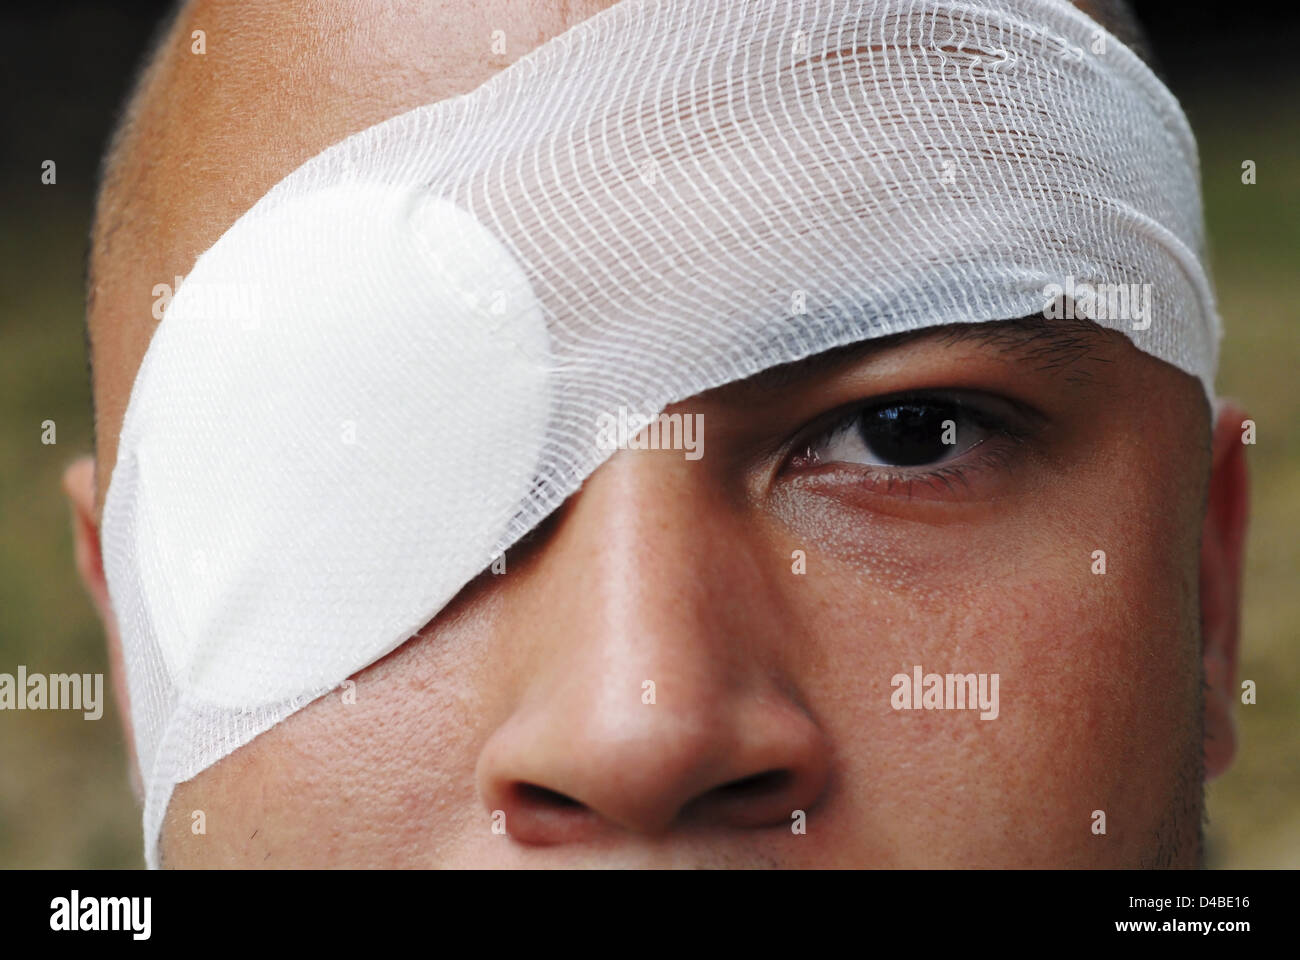 Así como se usa para tratar una lesión, parches en el ojo también pueden usarse para tratar un ojo perezoso. Foto de stock